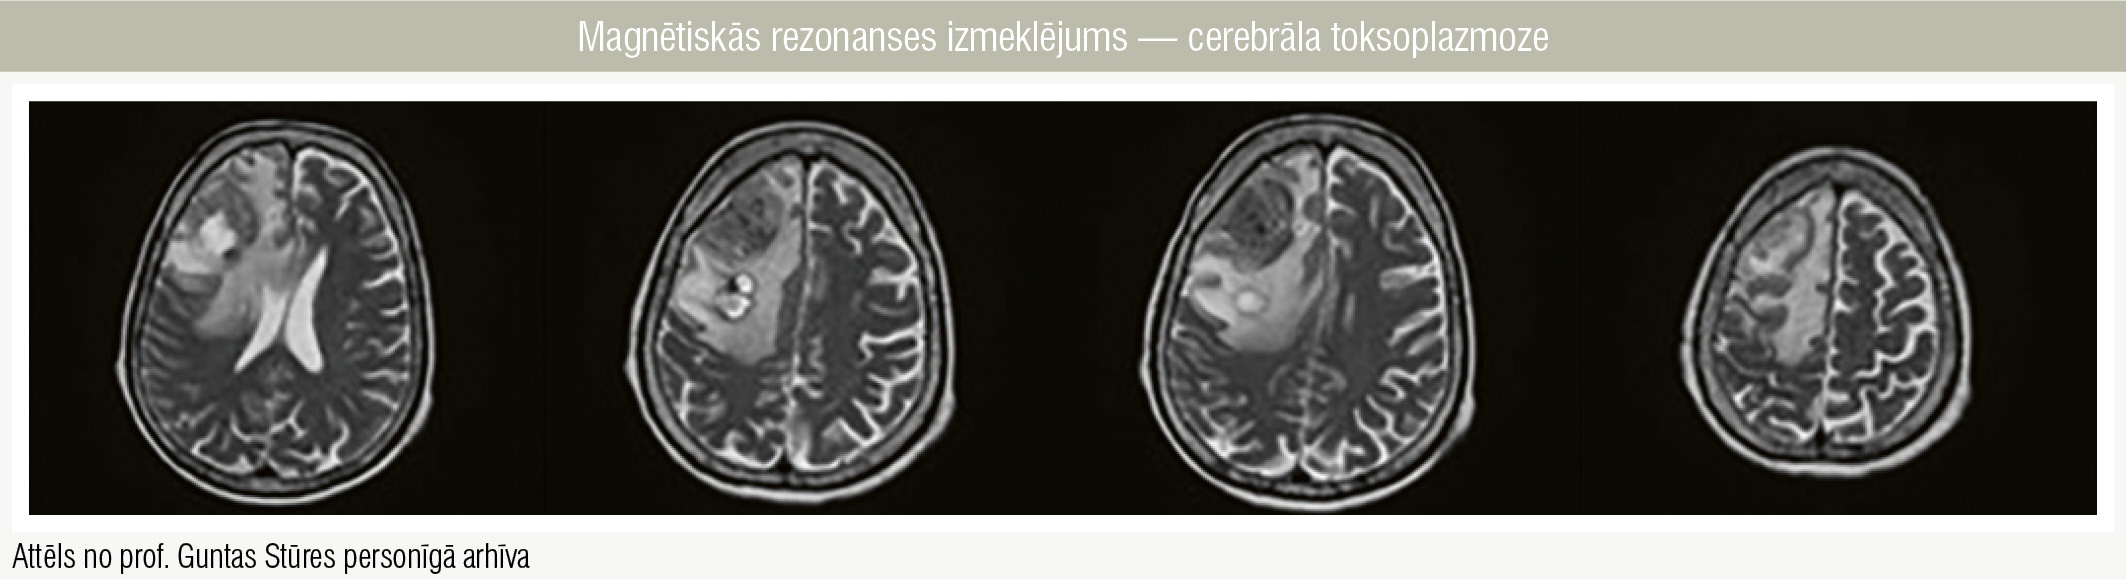 Magnētiskās rezonanses izmeklējums — cerebrāla toksoplazmoze